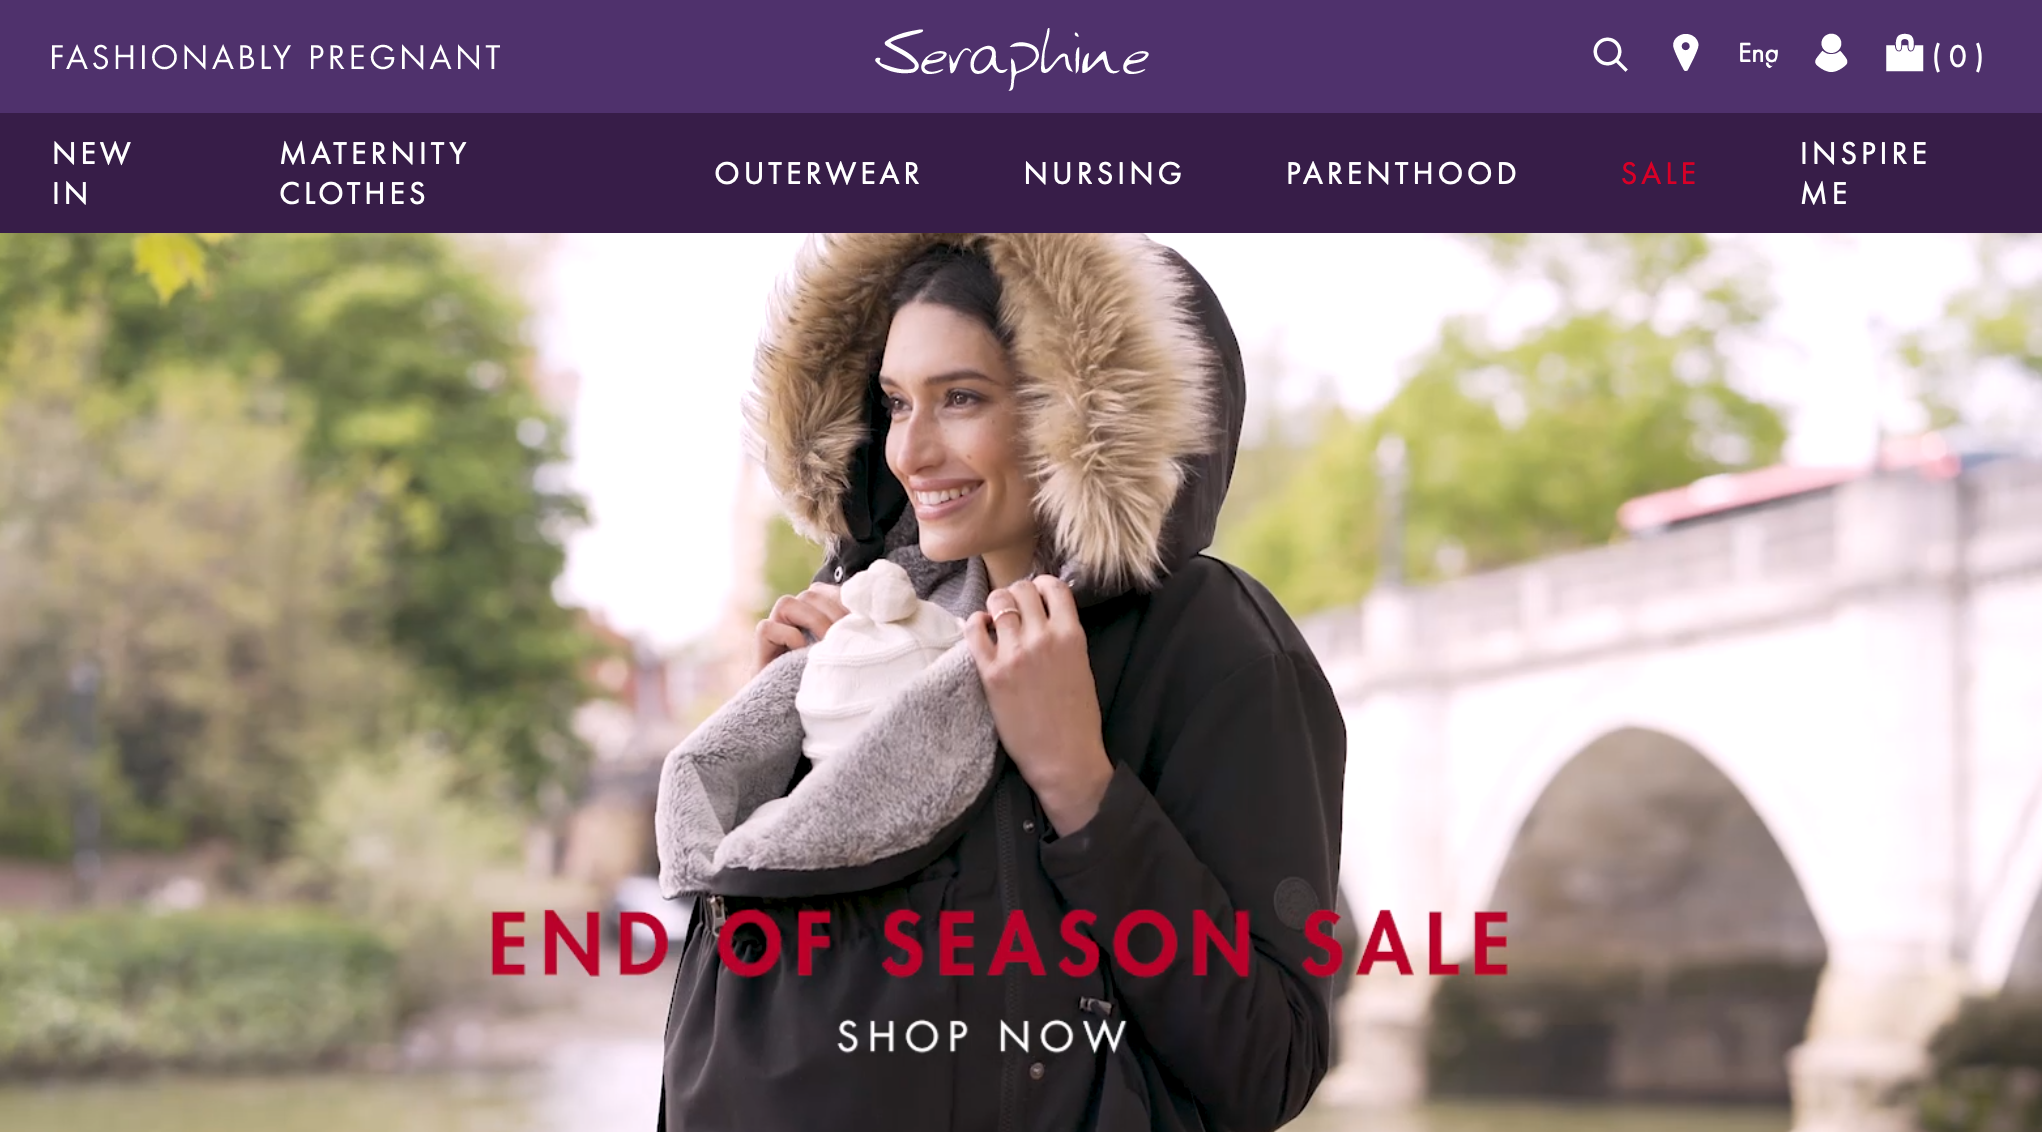 受凯特王妃追捧的英国孕妇装品牌 Seraphine 以5000万英镑被投资公司收购